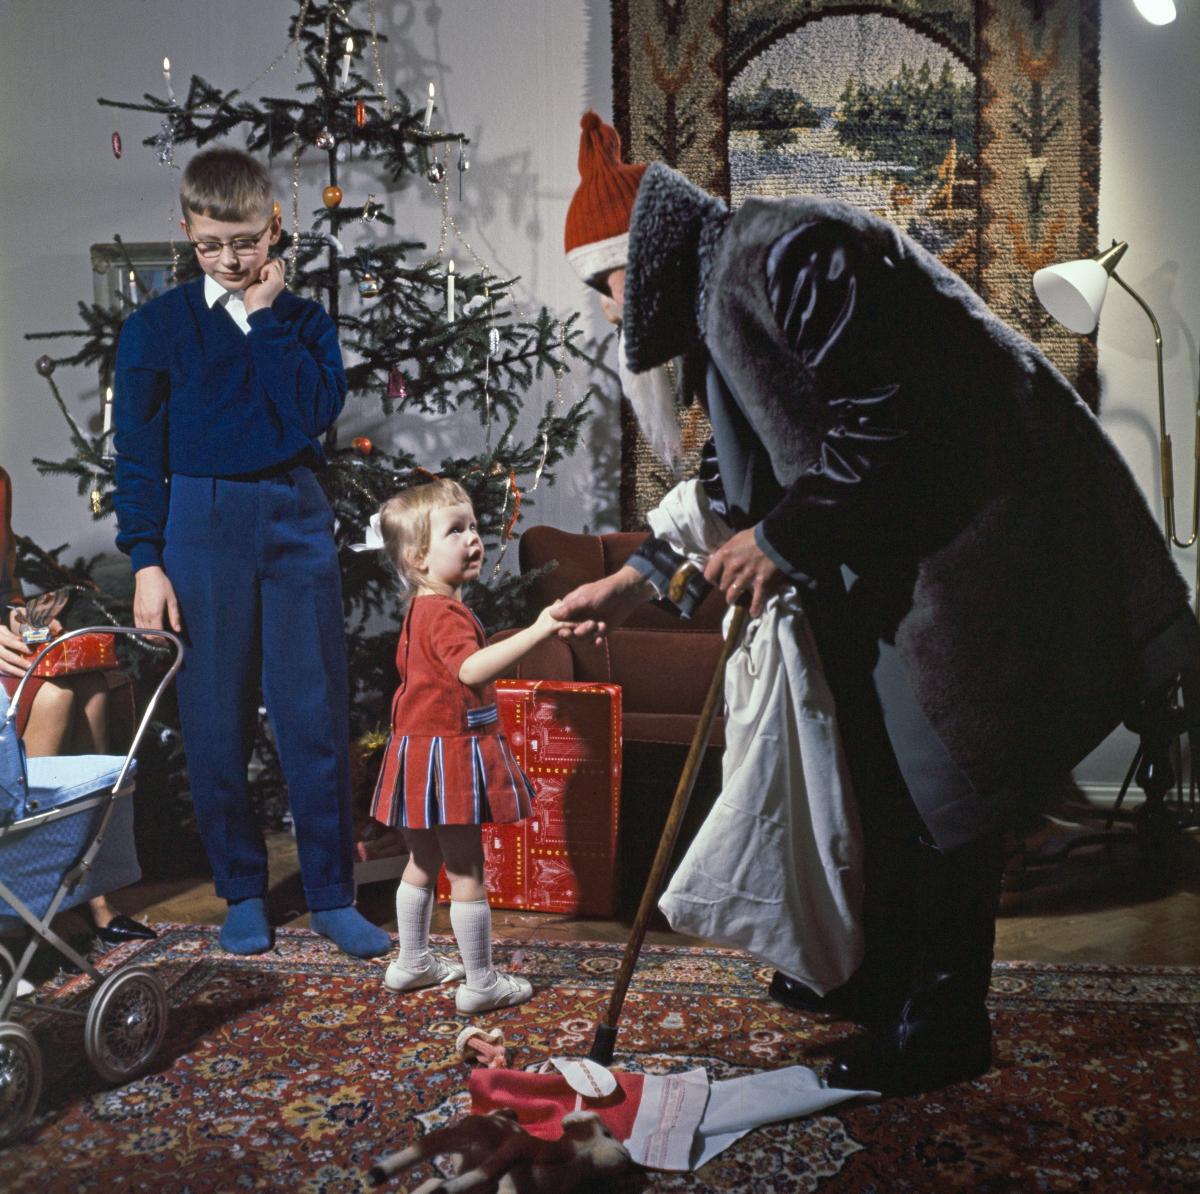 Joulukuusen ohella myös joulupukki on ollut yleinen näky helsinkiläiskodeissa. Tällä 1960-luvun pukilla takki on harmaa ja vain lakki punainen. Aurinkolasit pitävät pukin silmät piilossa. 